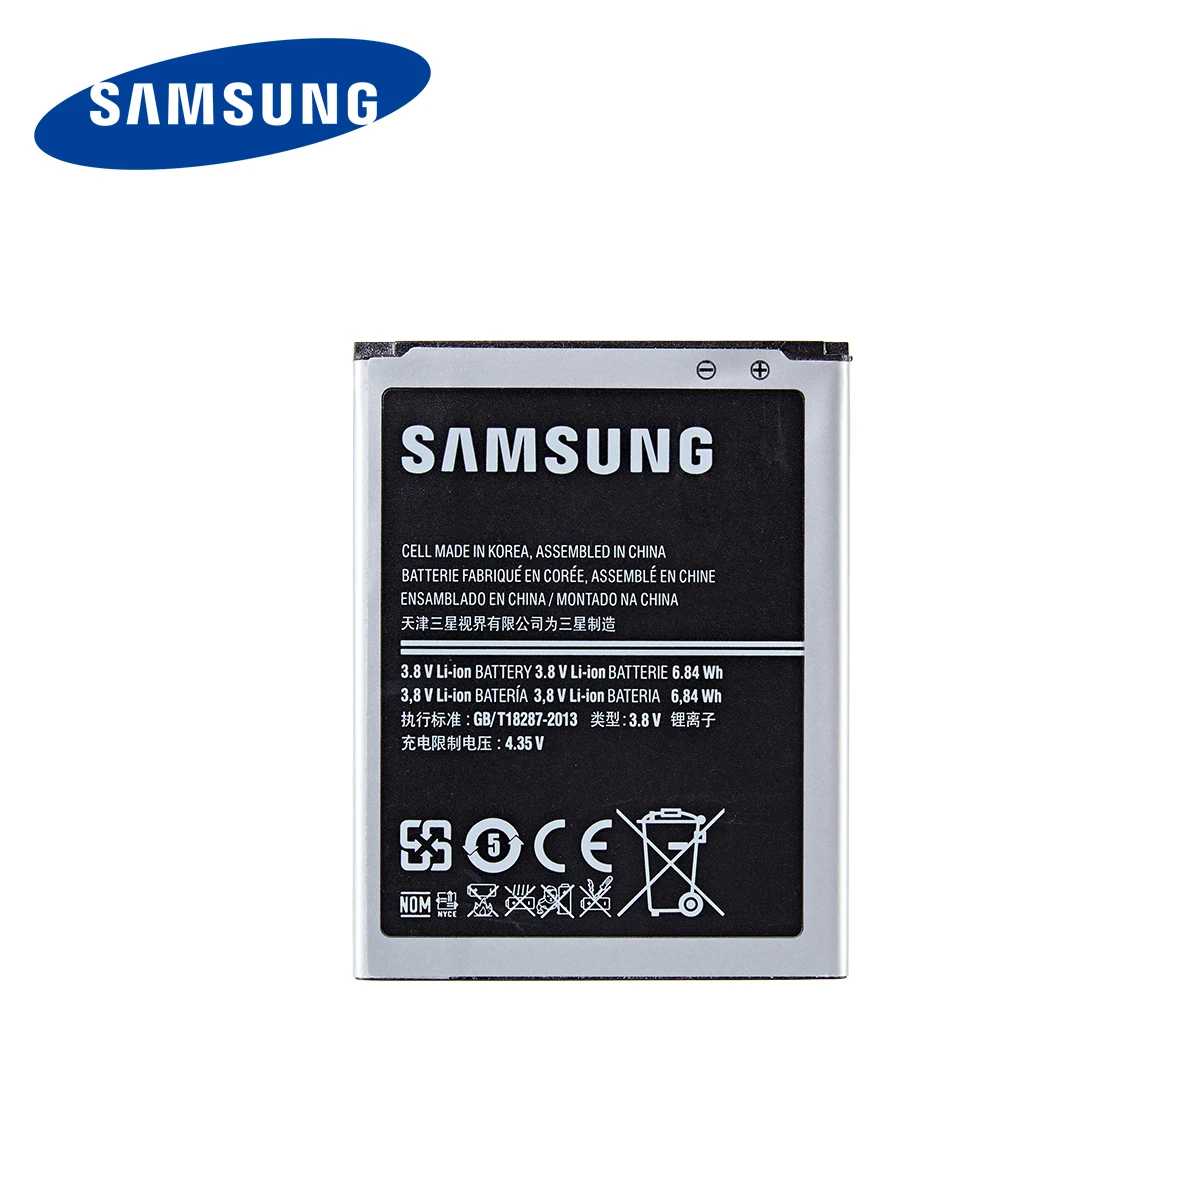 SAMSUNG Pôvodnej B150AE B150A batéria 1800mAh Pre Samsung Galaxy Core i8260 i8262 Galaxy Trend3 G3502 G3508 G3509 SM-G350E G350